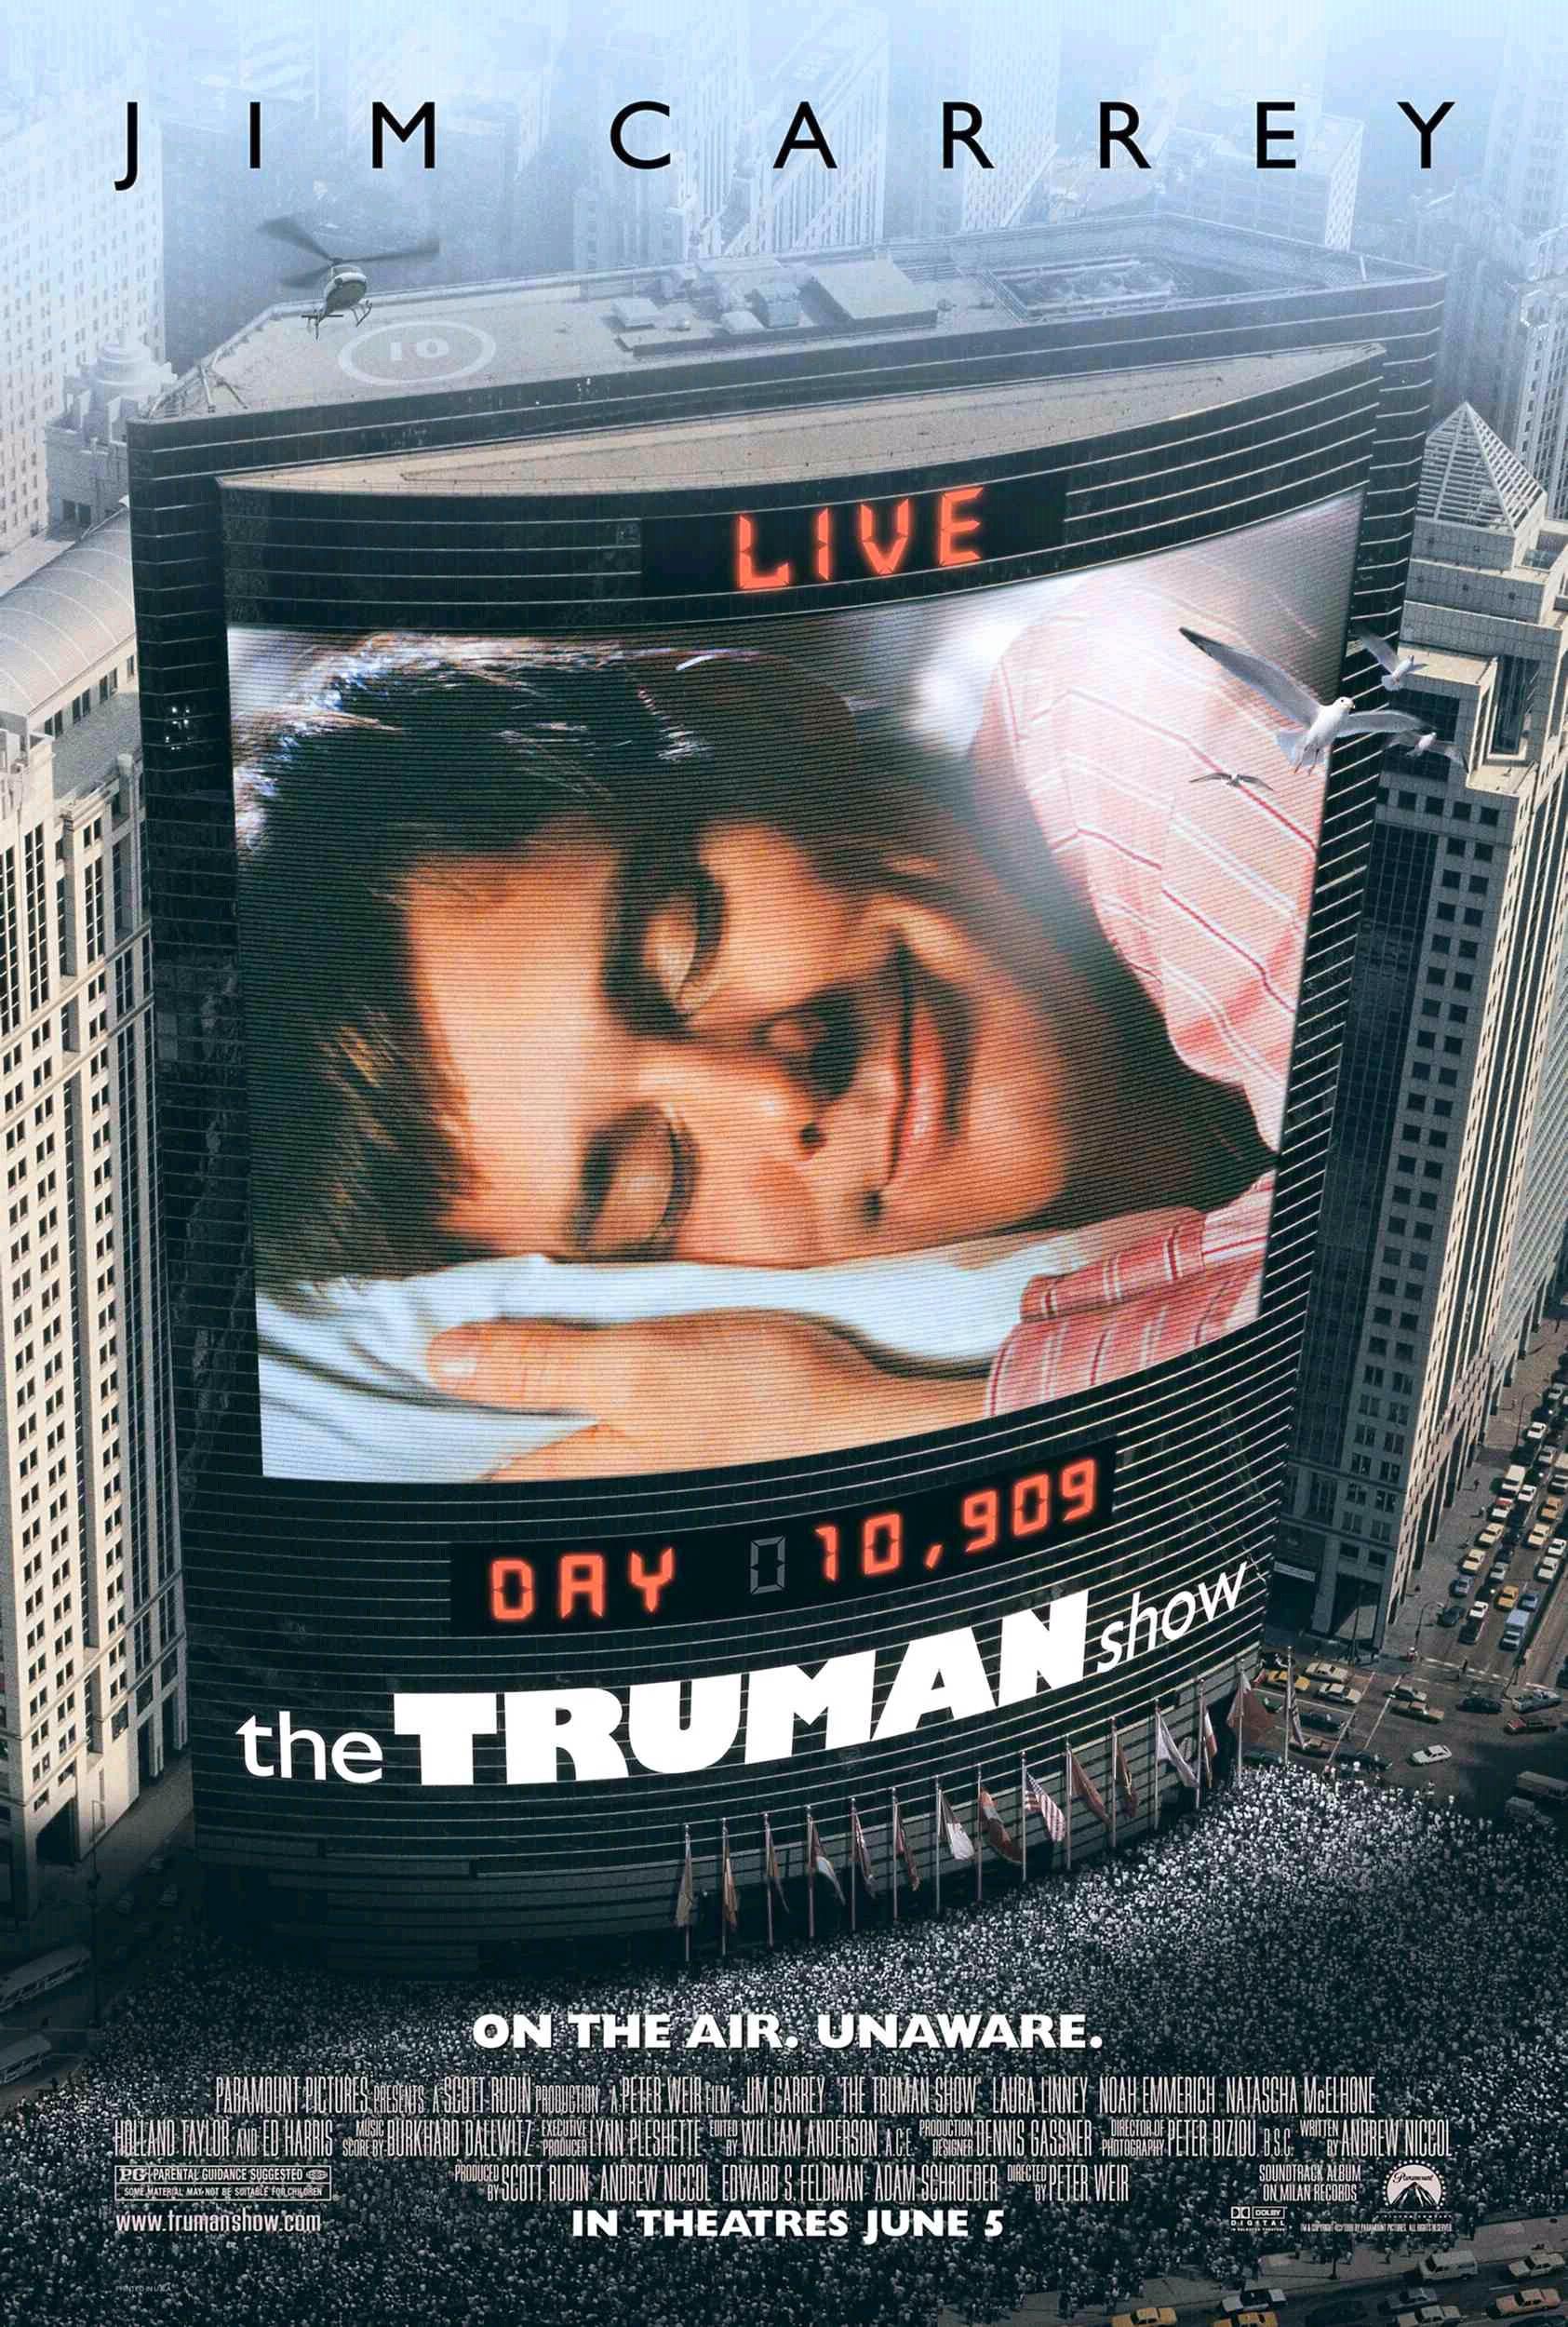 ดูหนังออนไลน์ฟรี The Truman Show ชีวิตมหัศจรรย์ ทรูแมน โชว์